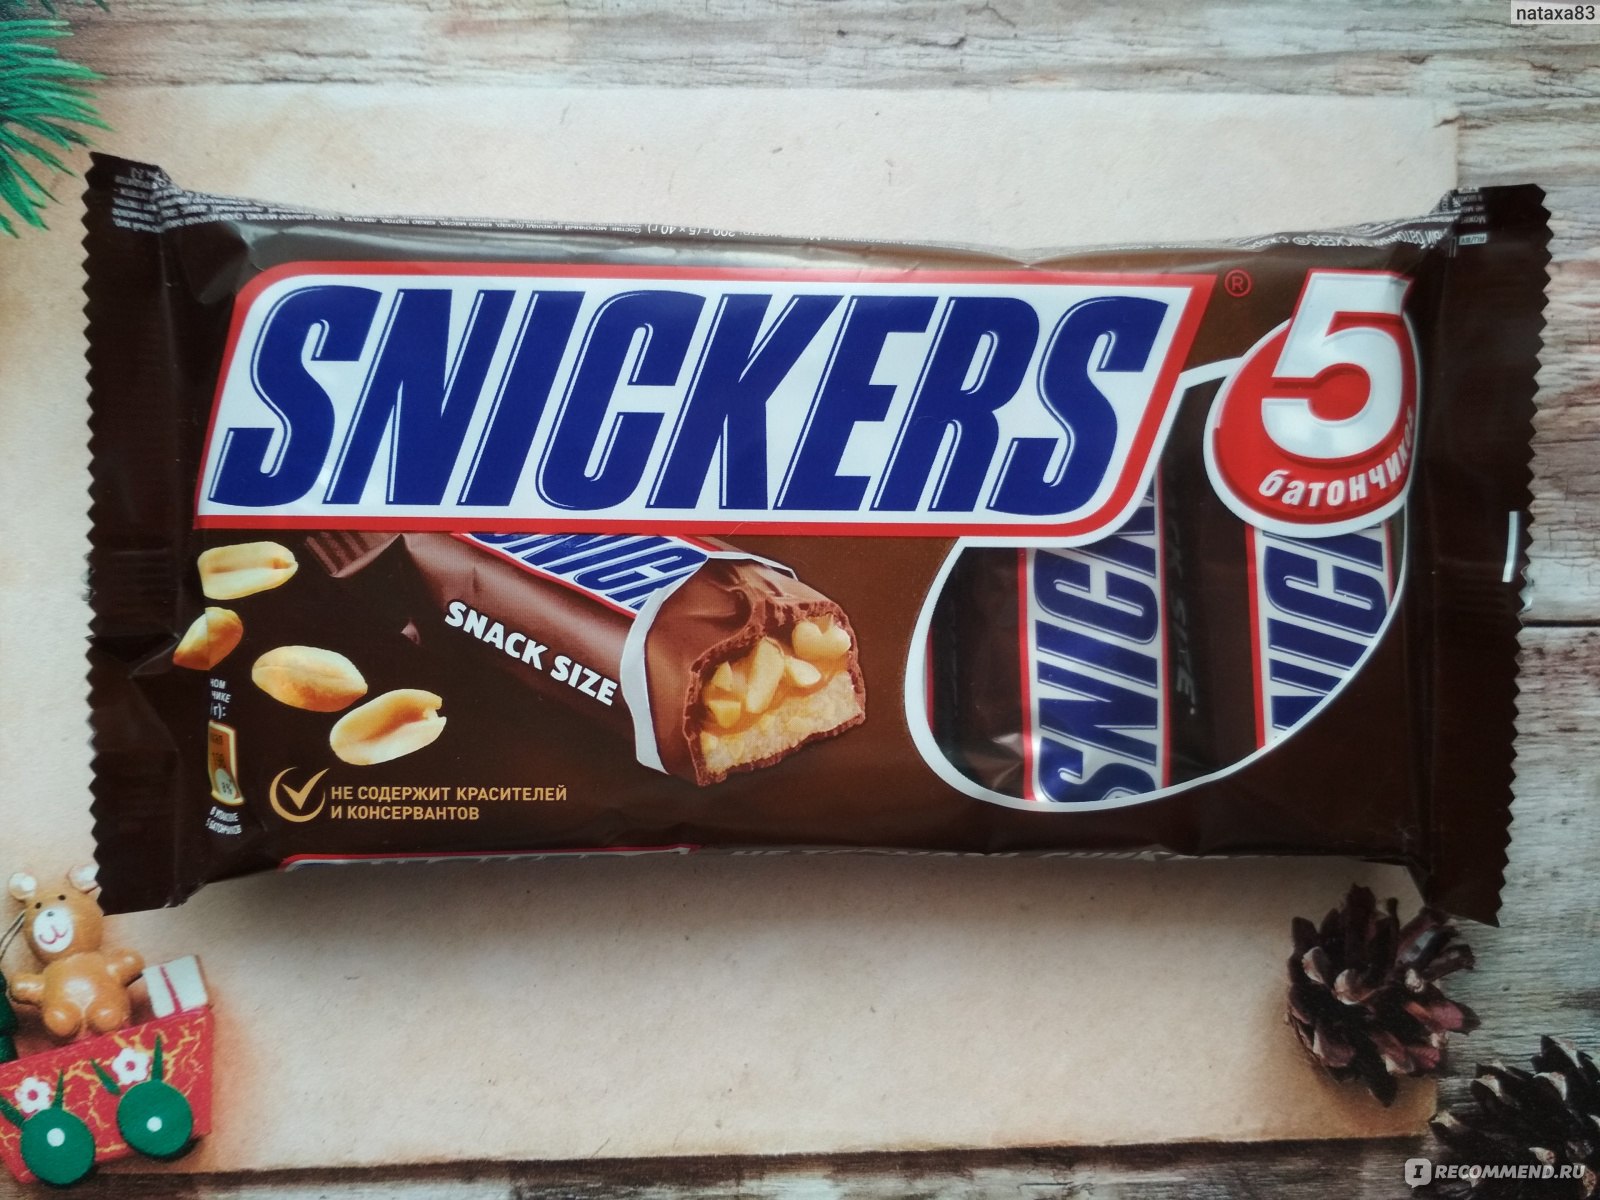 Сникерс snickers snack Size 42 г